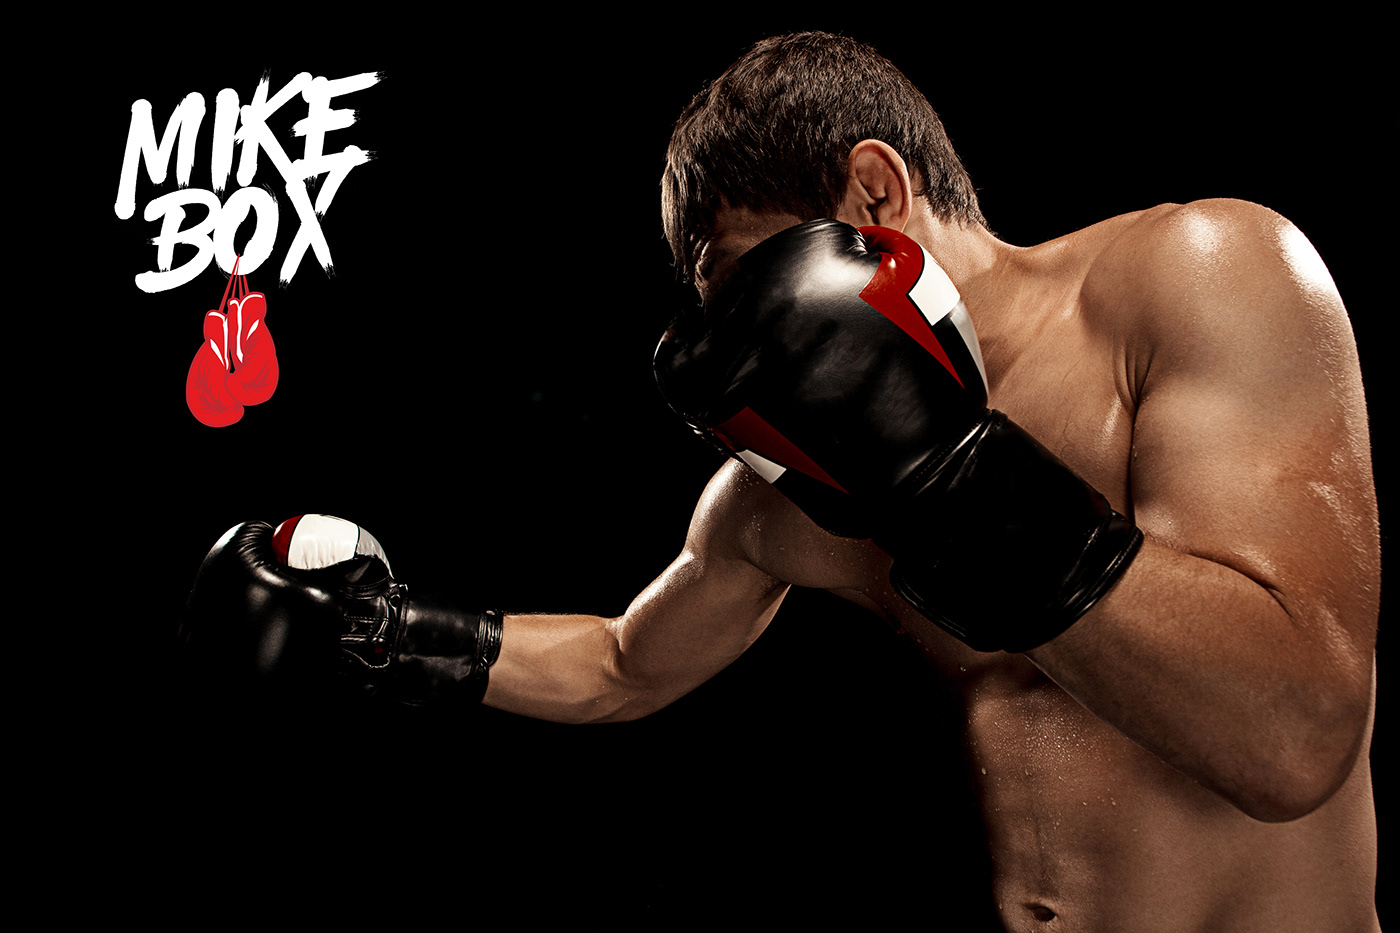 box Boxing branding  diseño logo mikebox